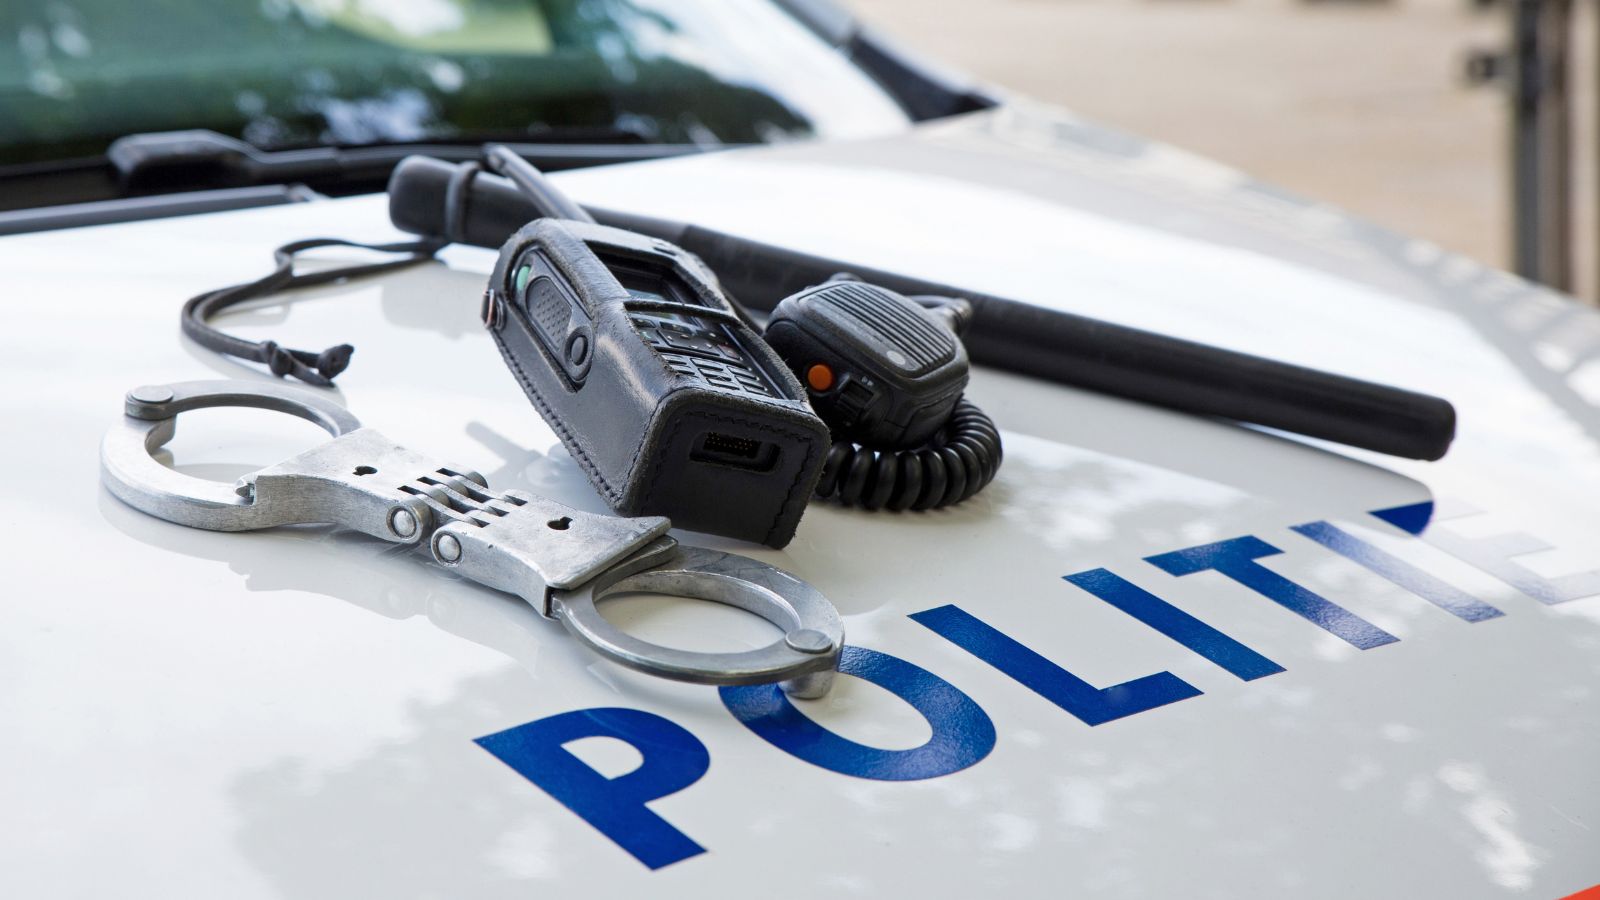 De motorkap van een politie auto waarop handboeien, een wapenstok en een walkietalkie liggen